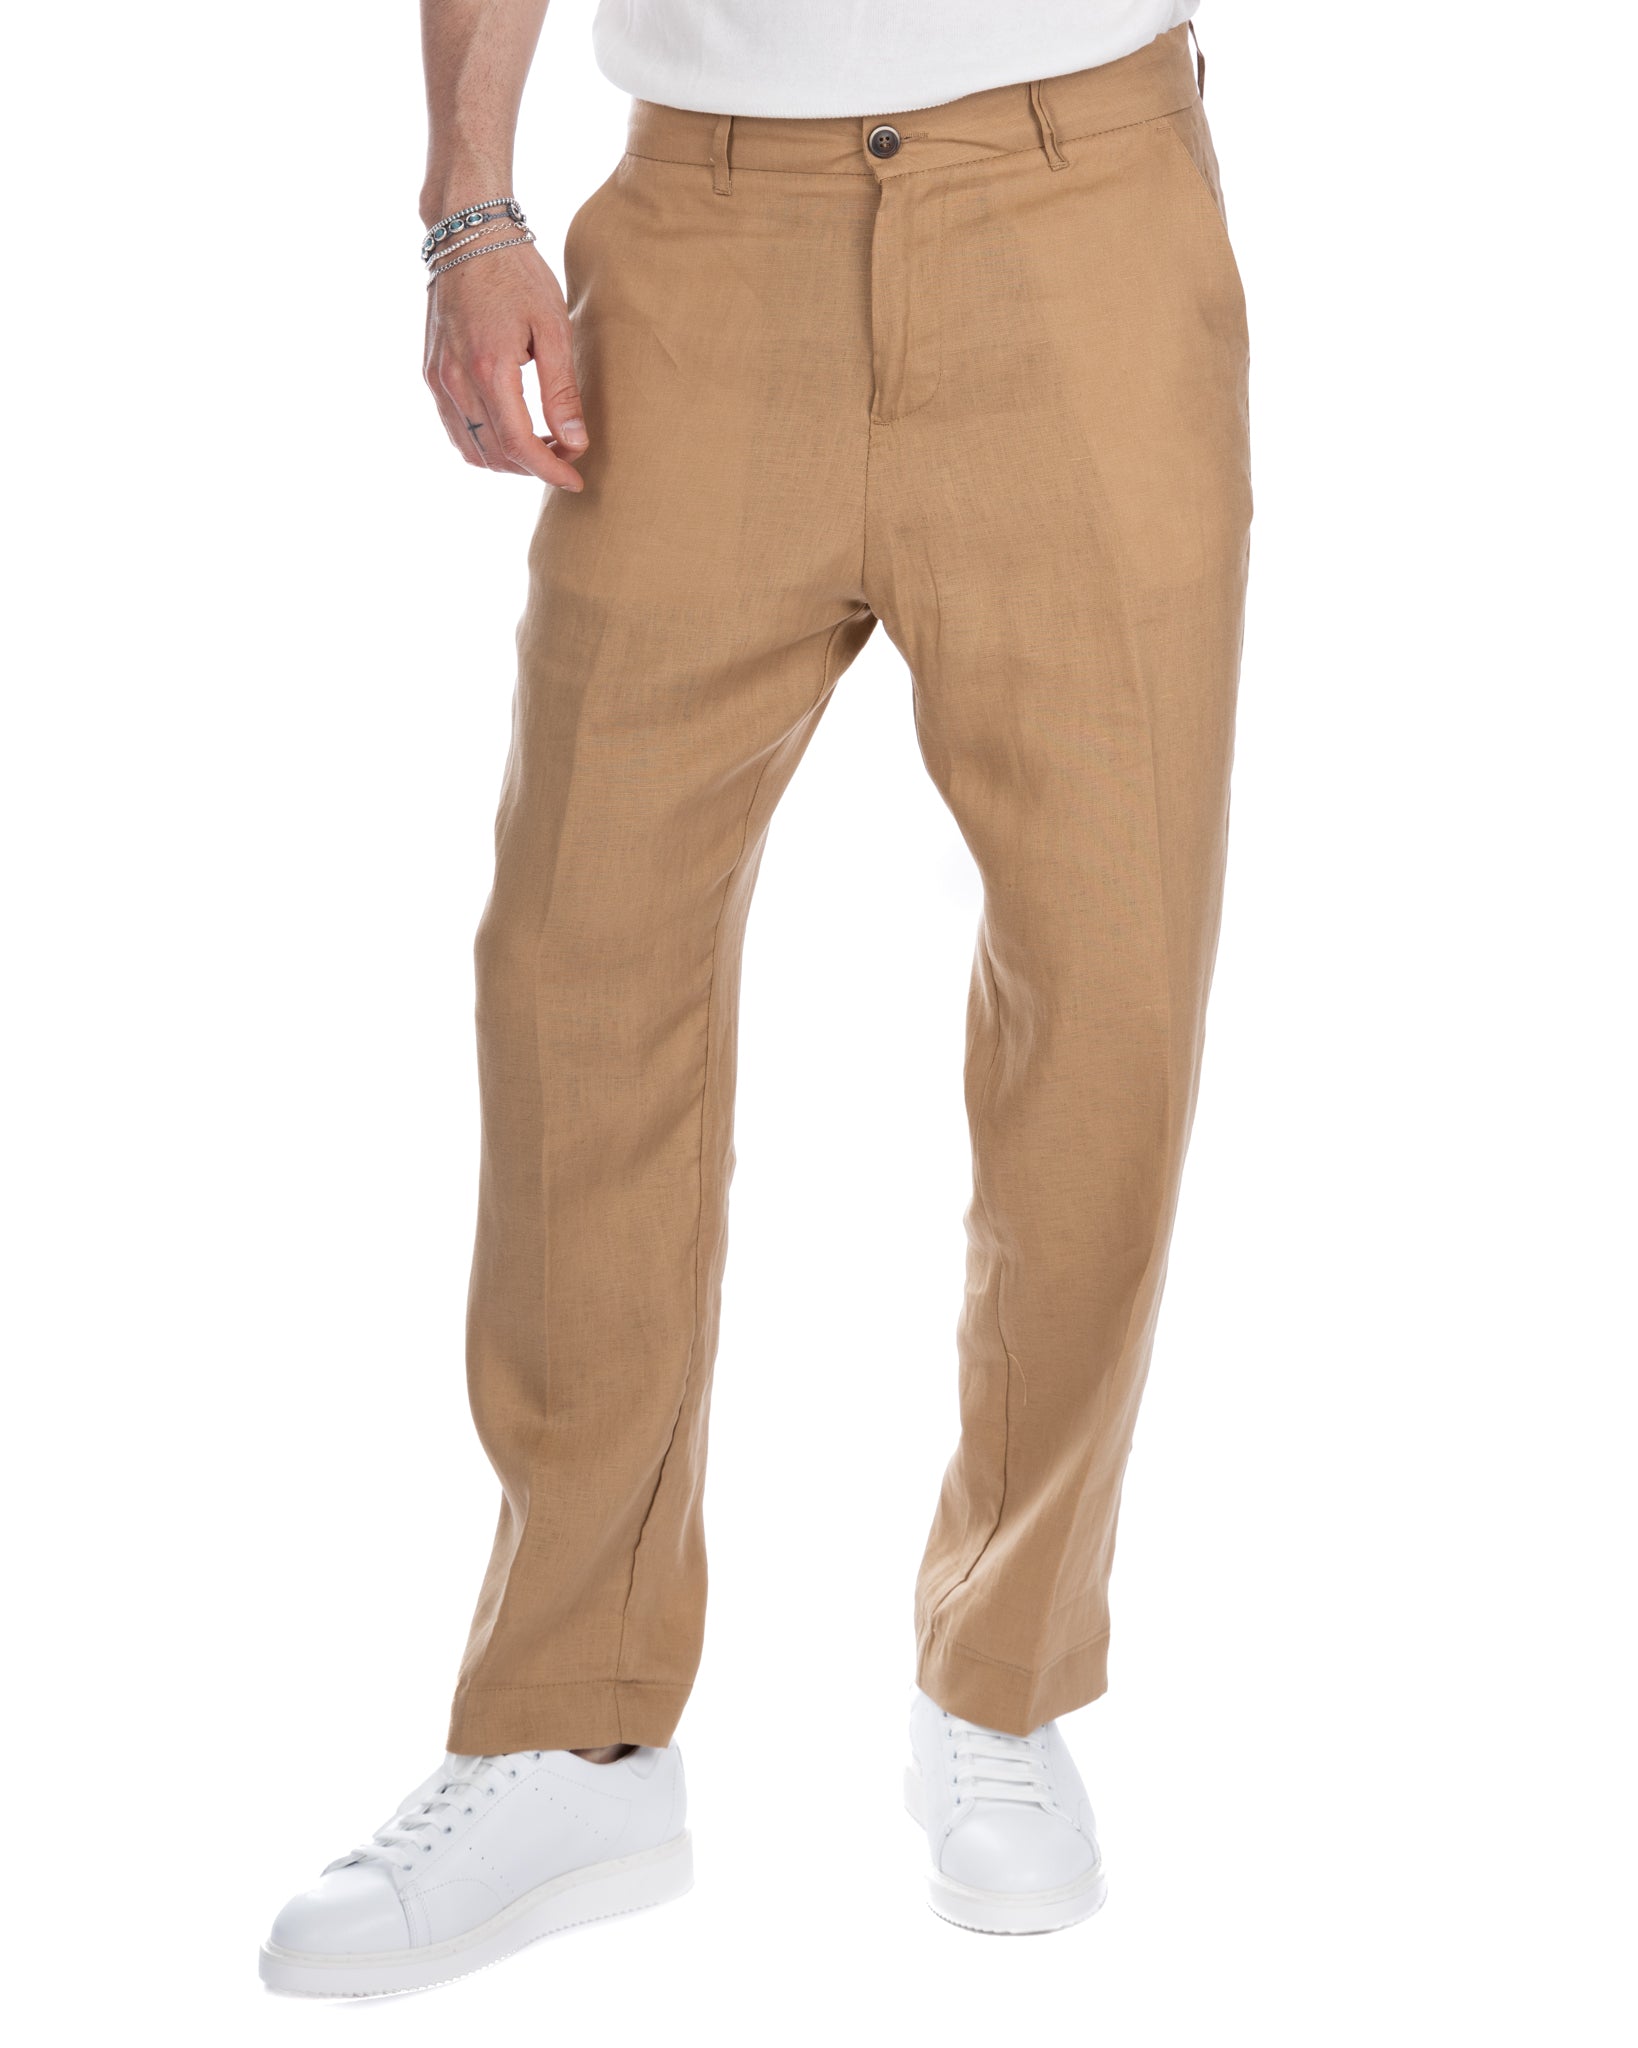 Lucas - beige wide trousers in pure linen